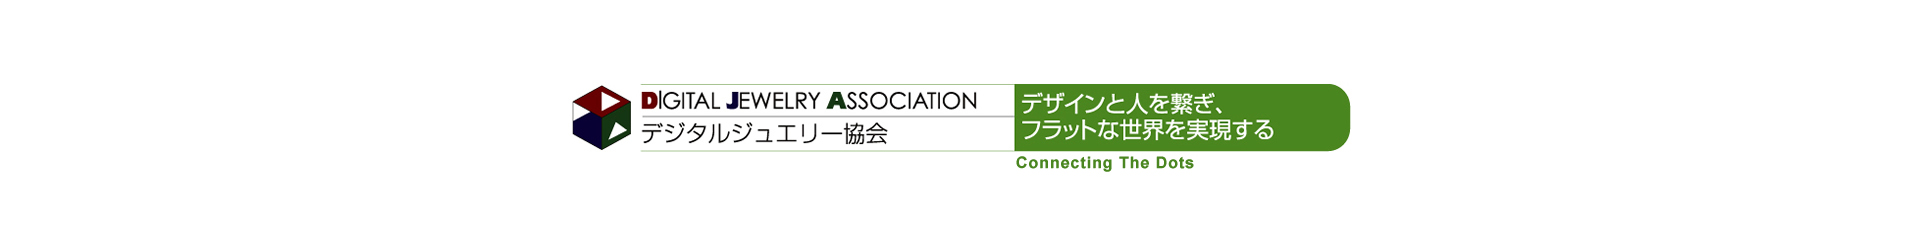 愛媛県で唯一のデジタルジュエリー協会認定デザイナーが所属しているパールメーカーです。